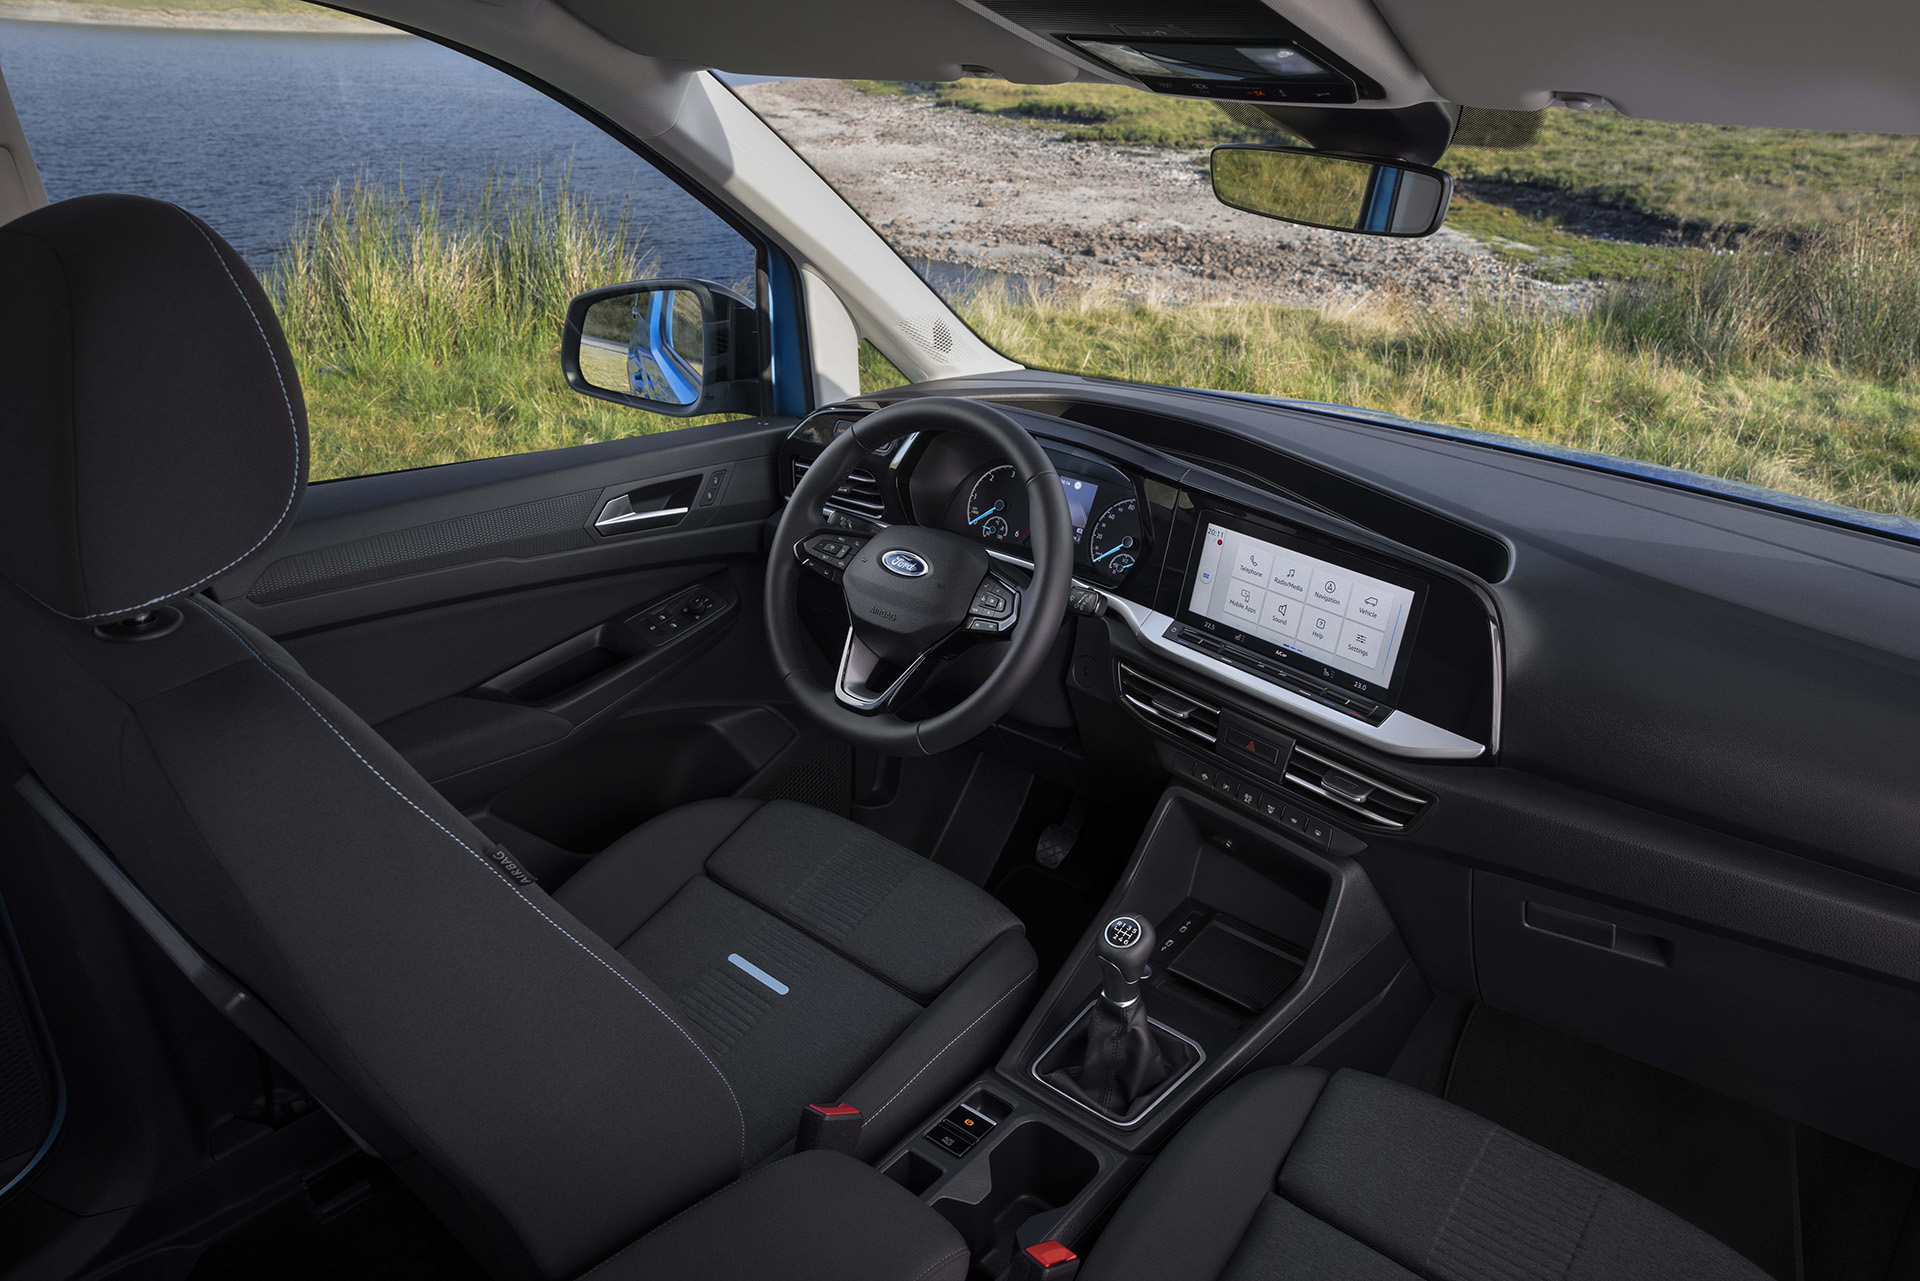 Prichádza nový Ford Tourneo Connect, delí sa o základy s Volkswagenom